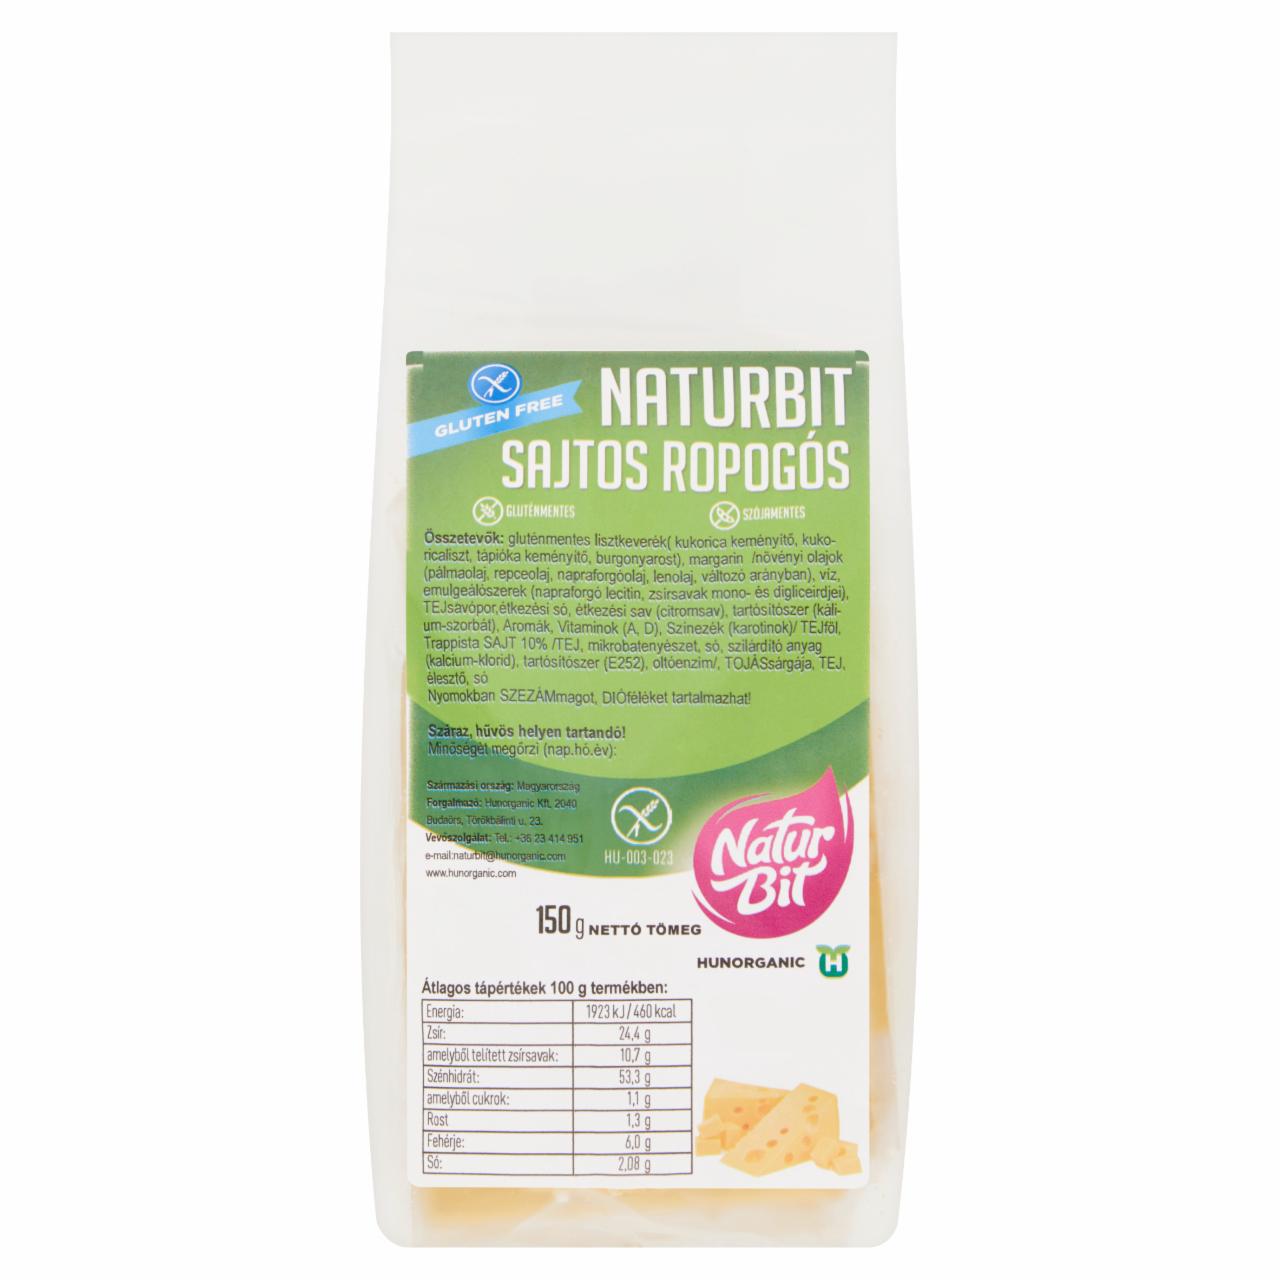 Képek - Naturbit sajtos ropogós 150 g